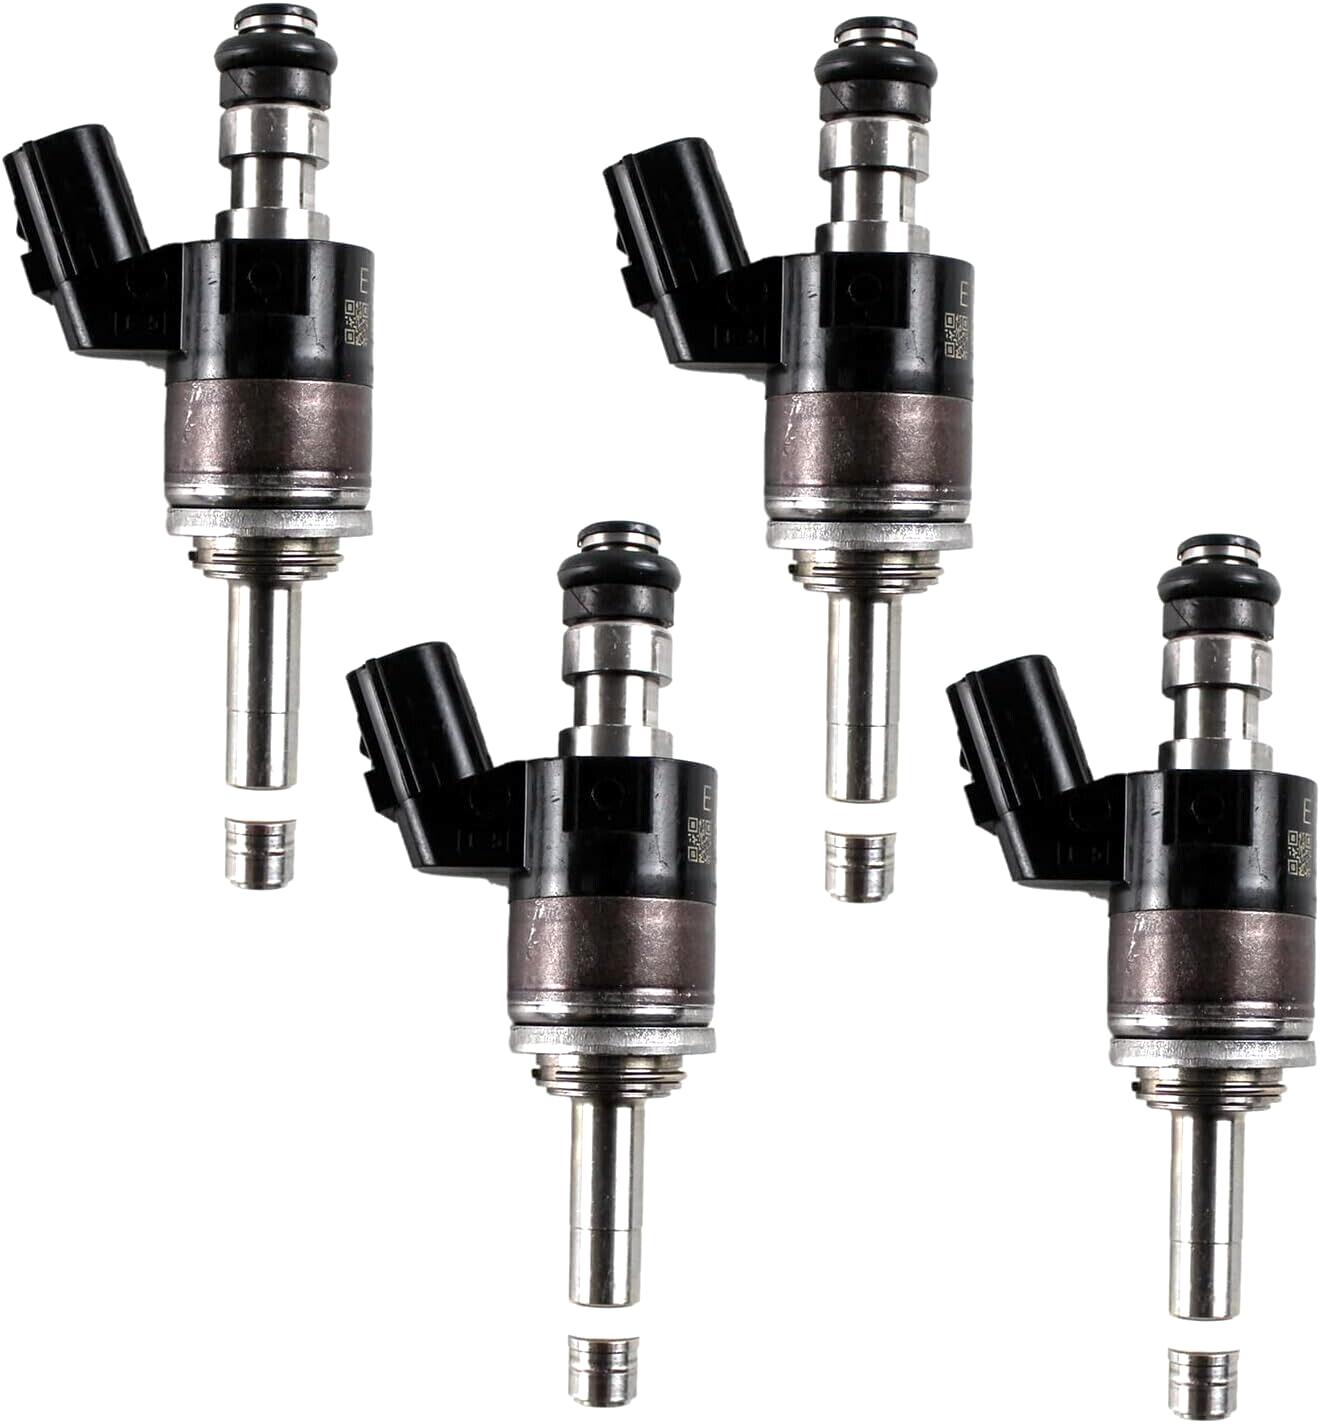 HONDA Genuine 16010-5R1-315 FIT 2015-2020 1.5L Fuel Injector Fuel Nozzle Set OEM